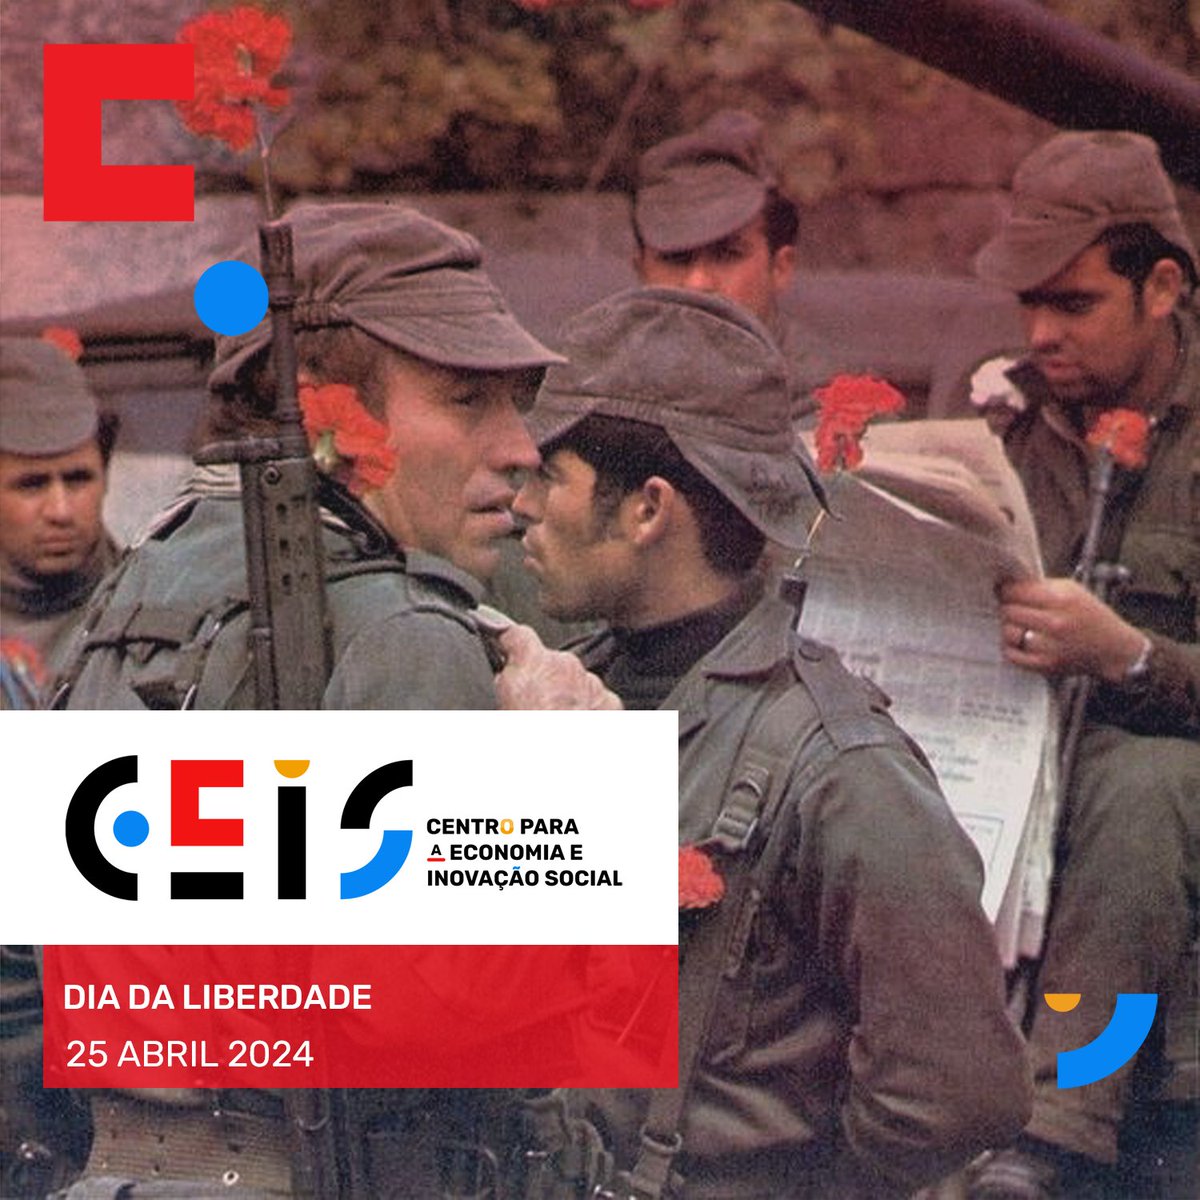 25 abril 2024 | Dia da Liberdade 🇵🇹

#CEIS #25deAbril #DiaDaLiberdade #Democracia #Portugal #economiasocial